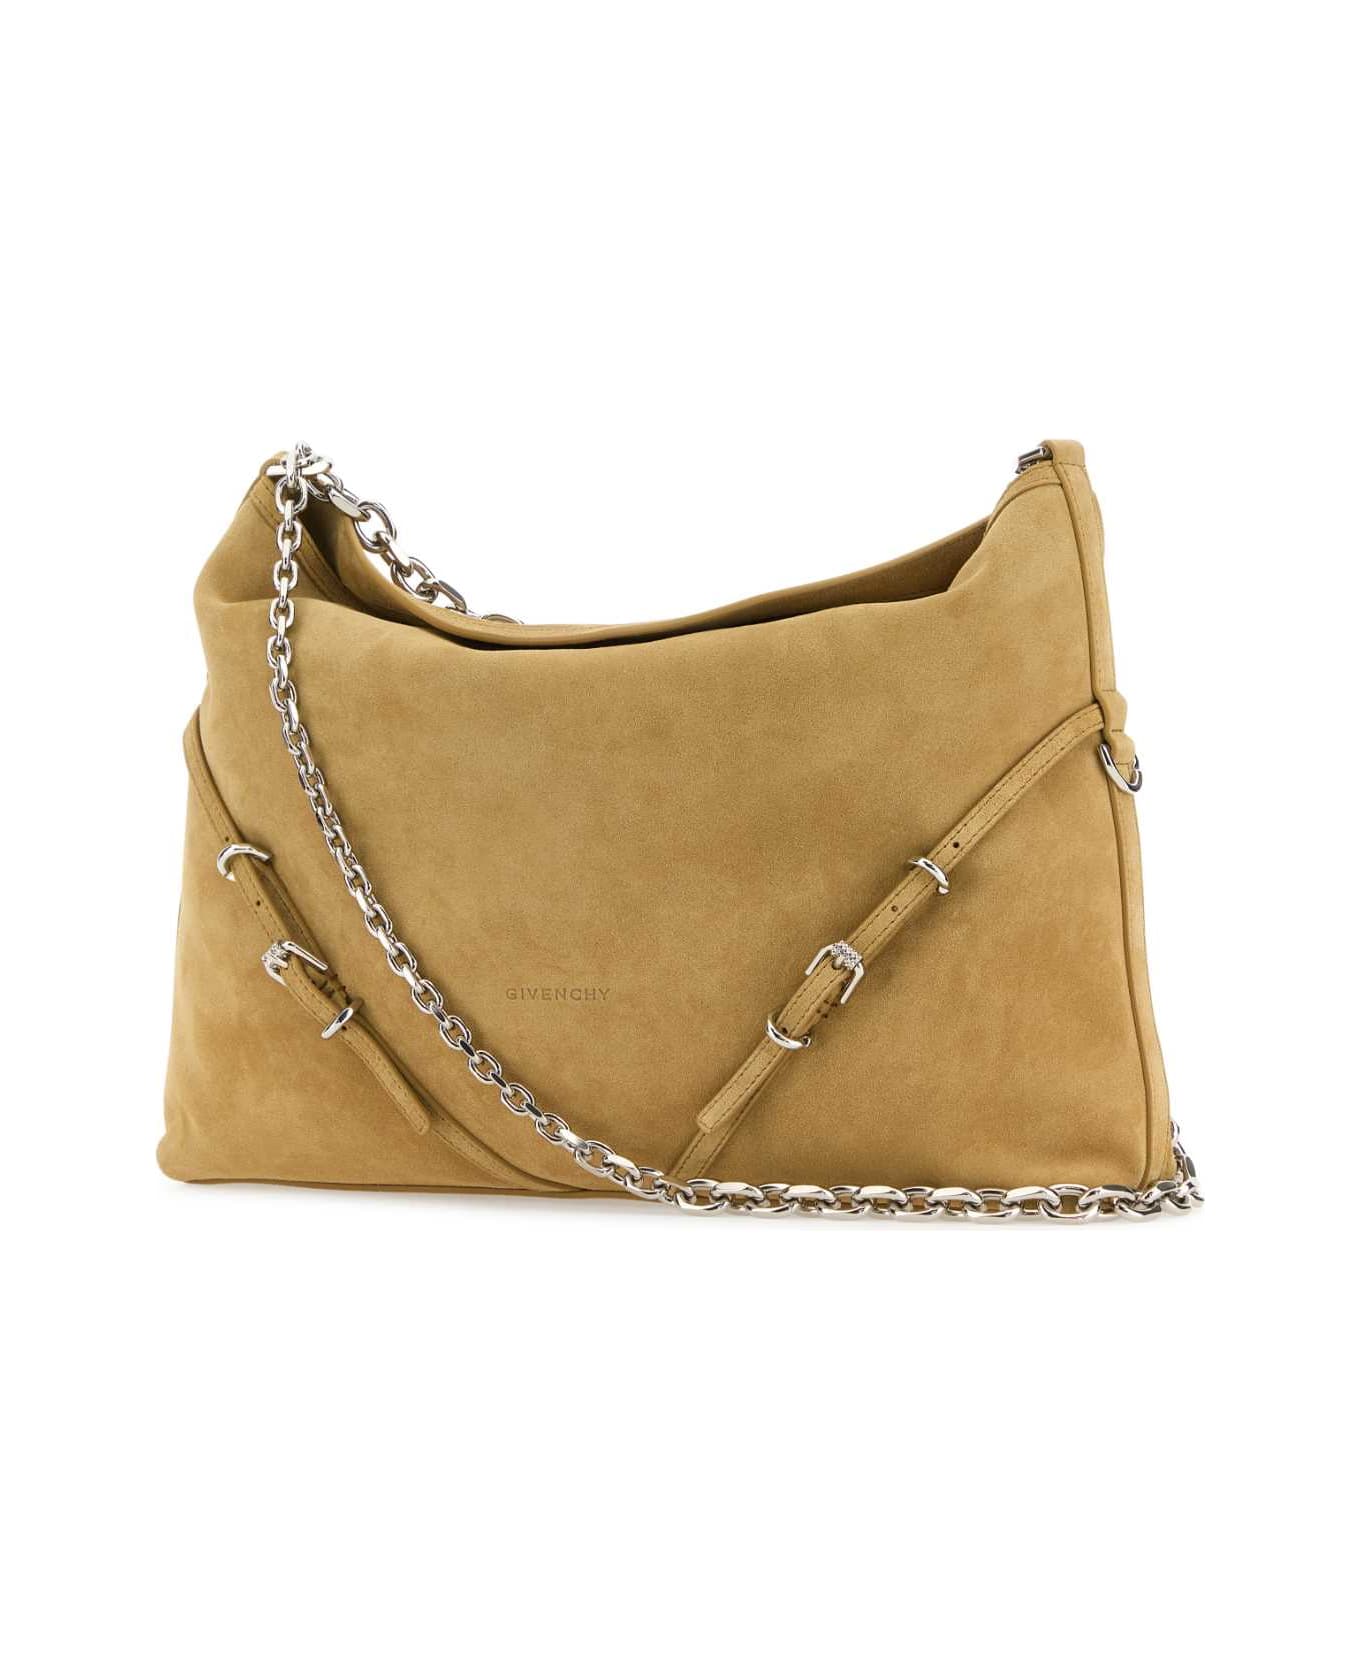 Givenchy Beige Suede Voyou Chain Shoulder Bag - HAZEL